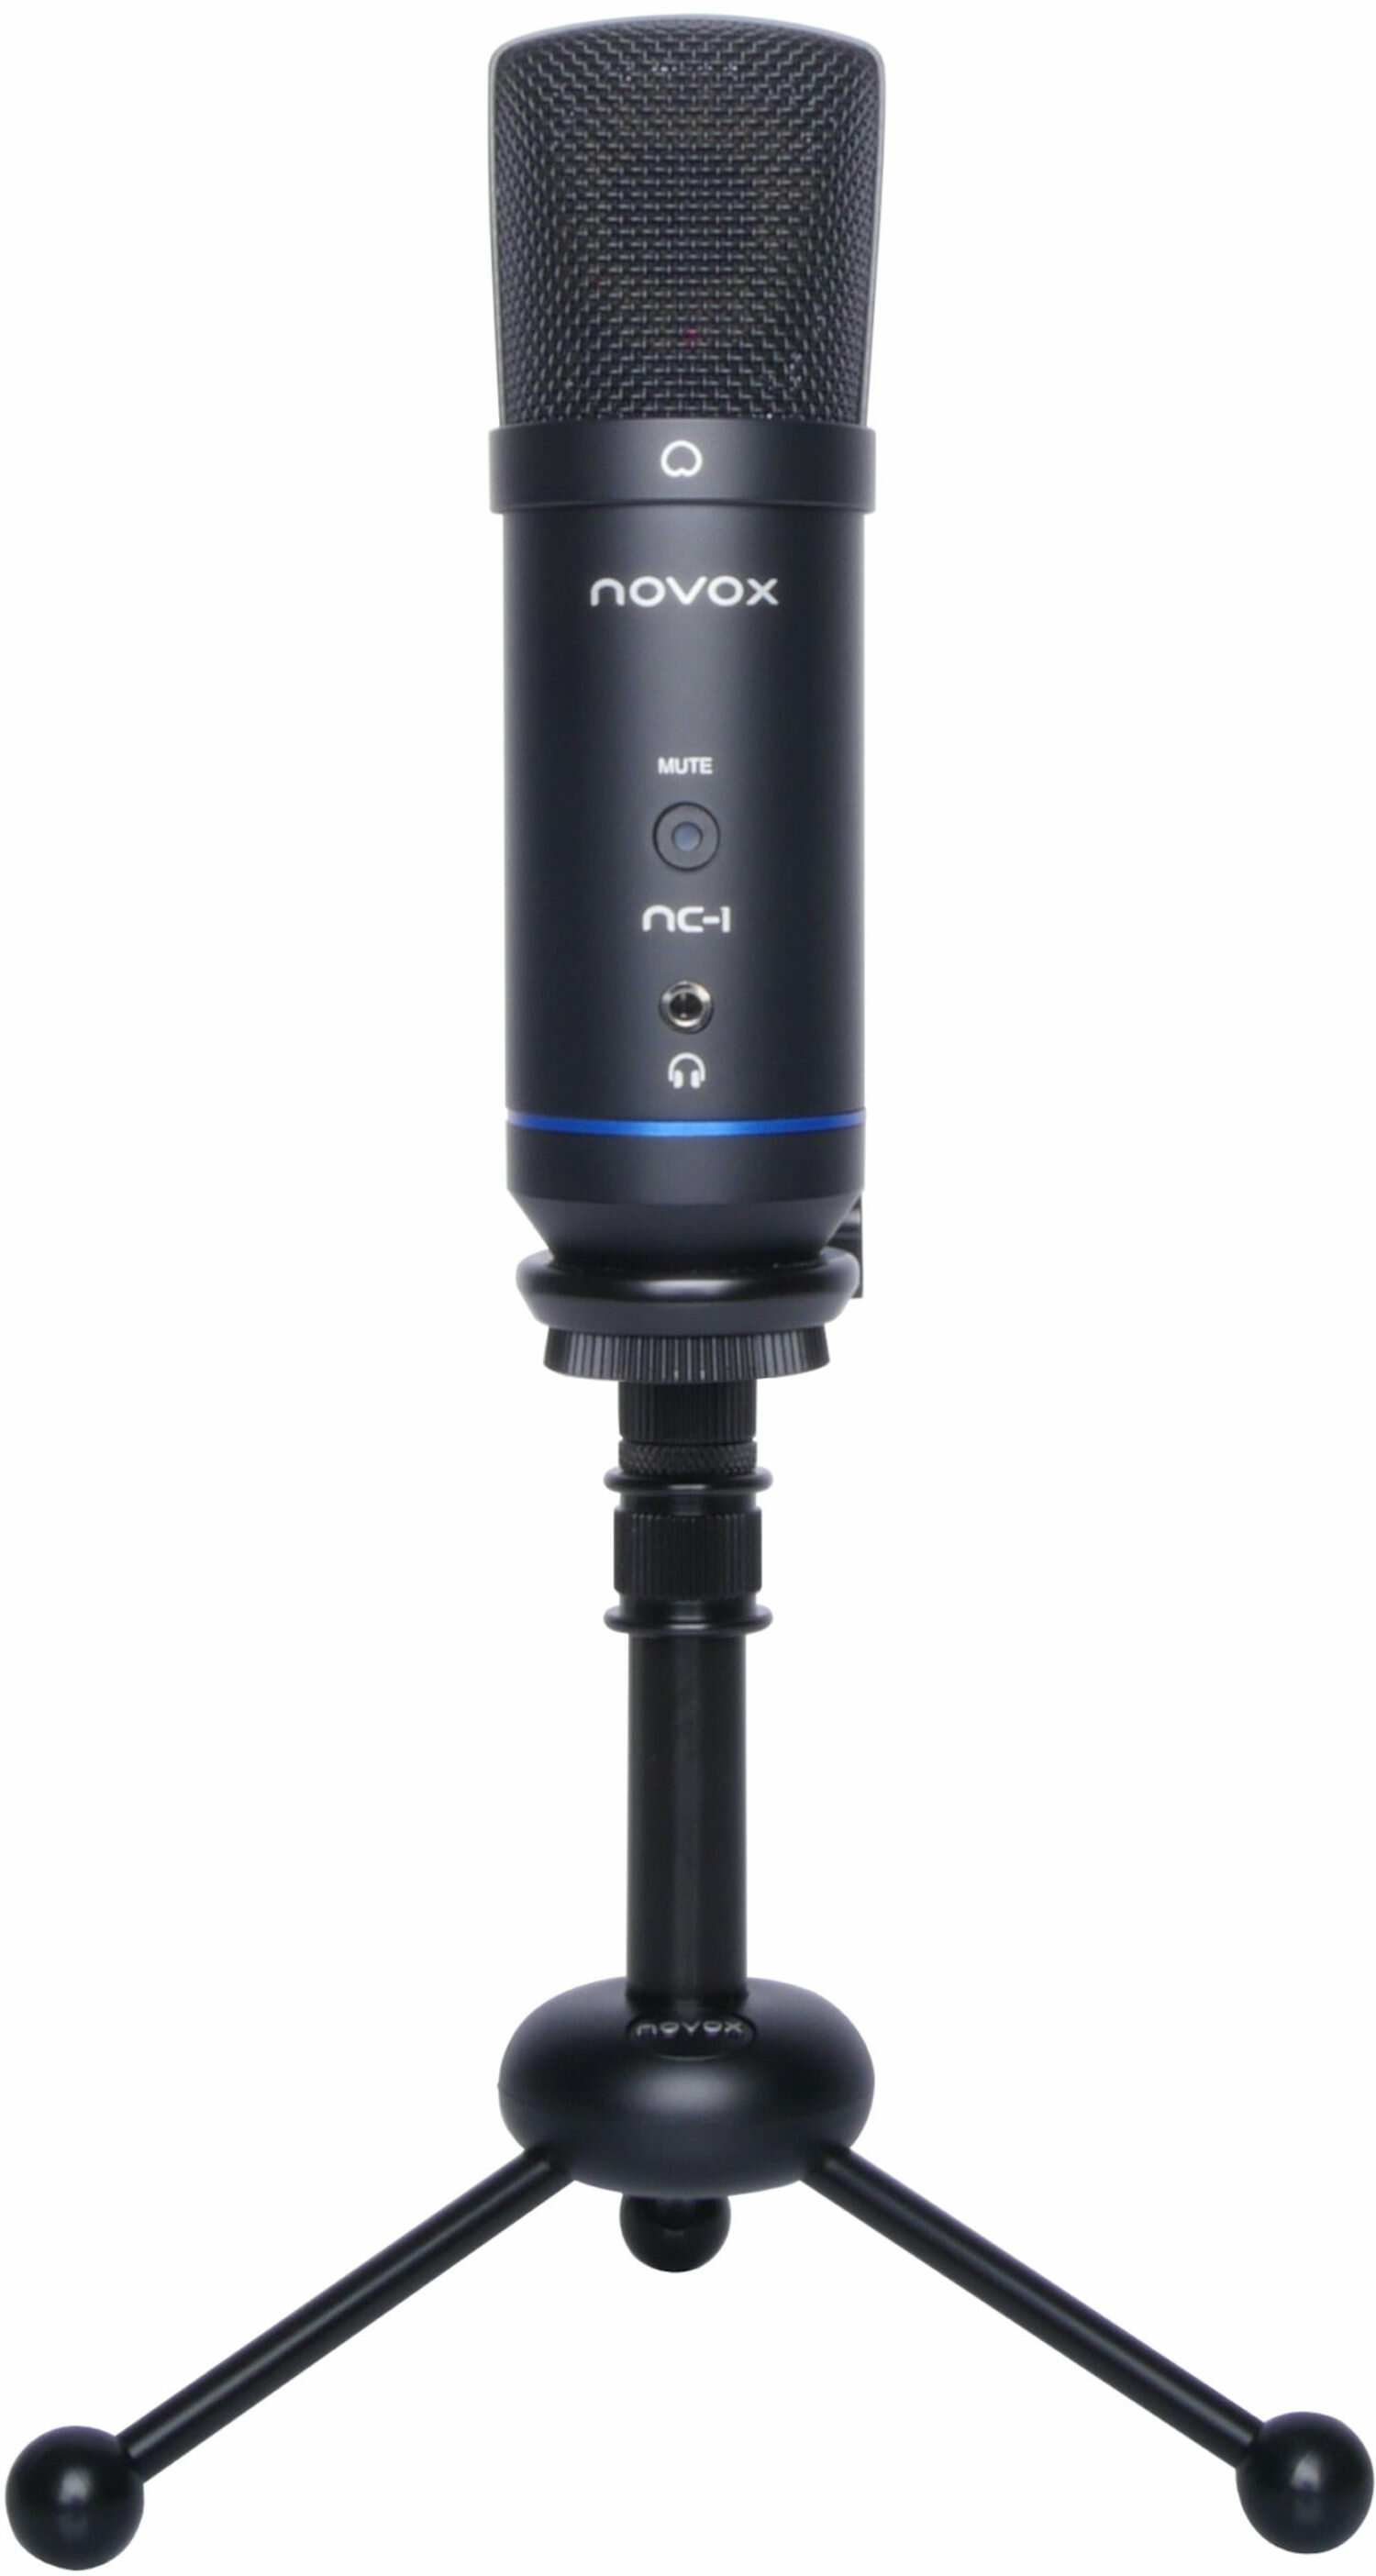 NOVOX NC-1 Class Mikrofon - niskie ceny i opinie w Media Expert